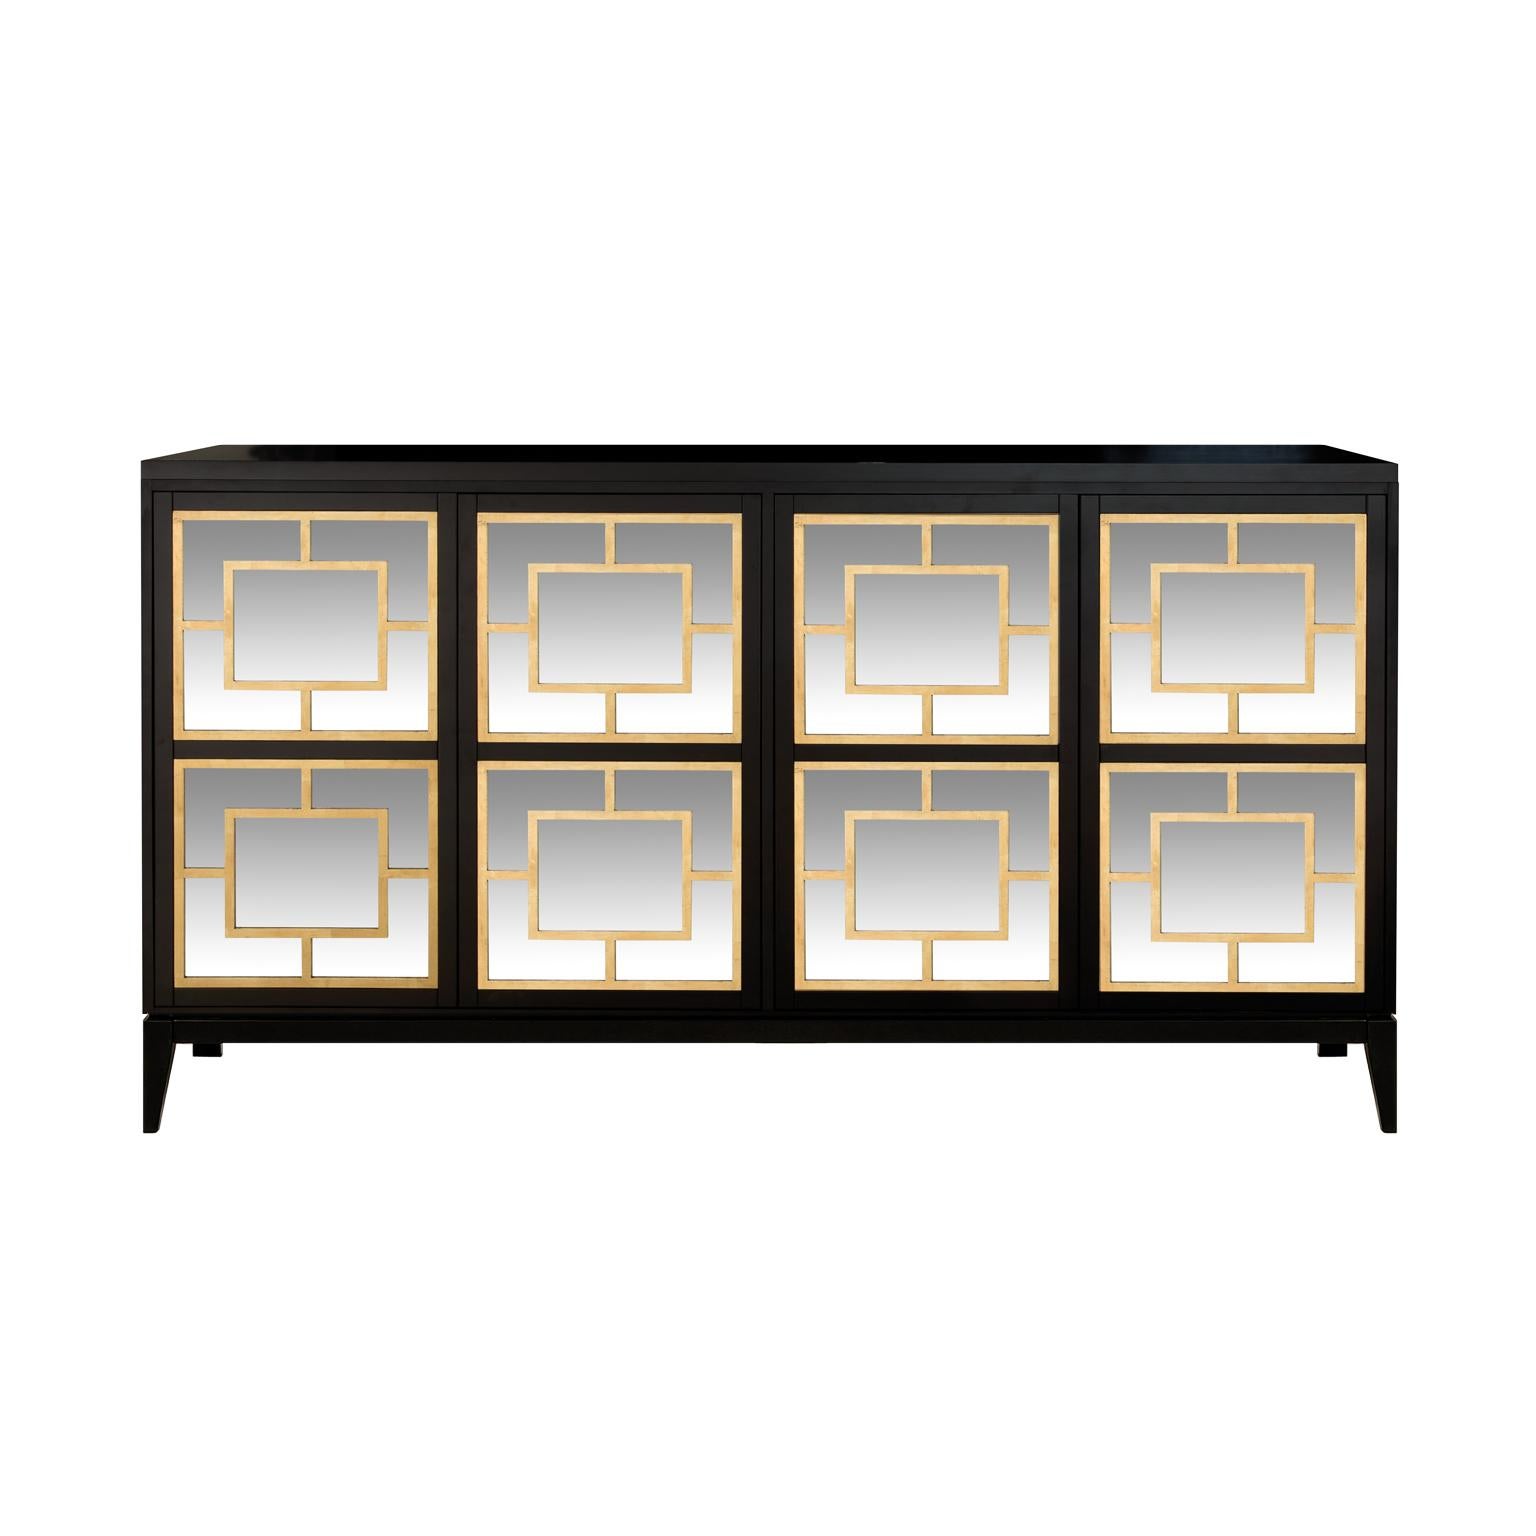 Das von IC entworfene und von italienischen Handwerkern gefertigte Sideboard Zoe verfügt über vier Spiegeltüren, die mit geometrischen Mustern in Blattgold verziert sind. Der Korpus ruht auf konischen Beinen, die ihm ein zeitloses Aussehen